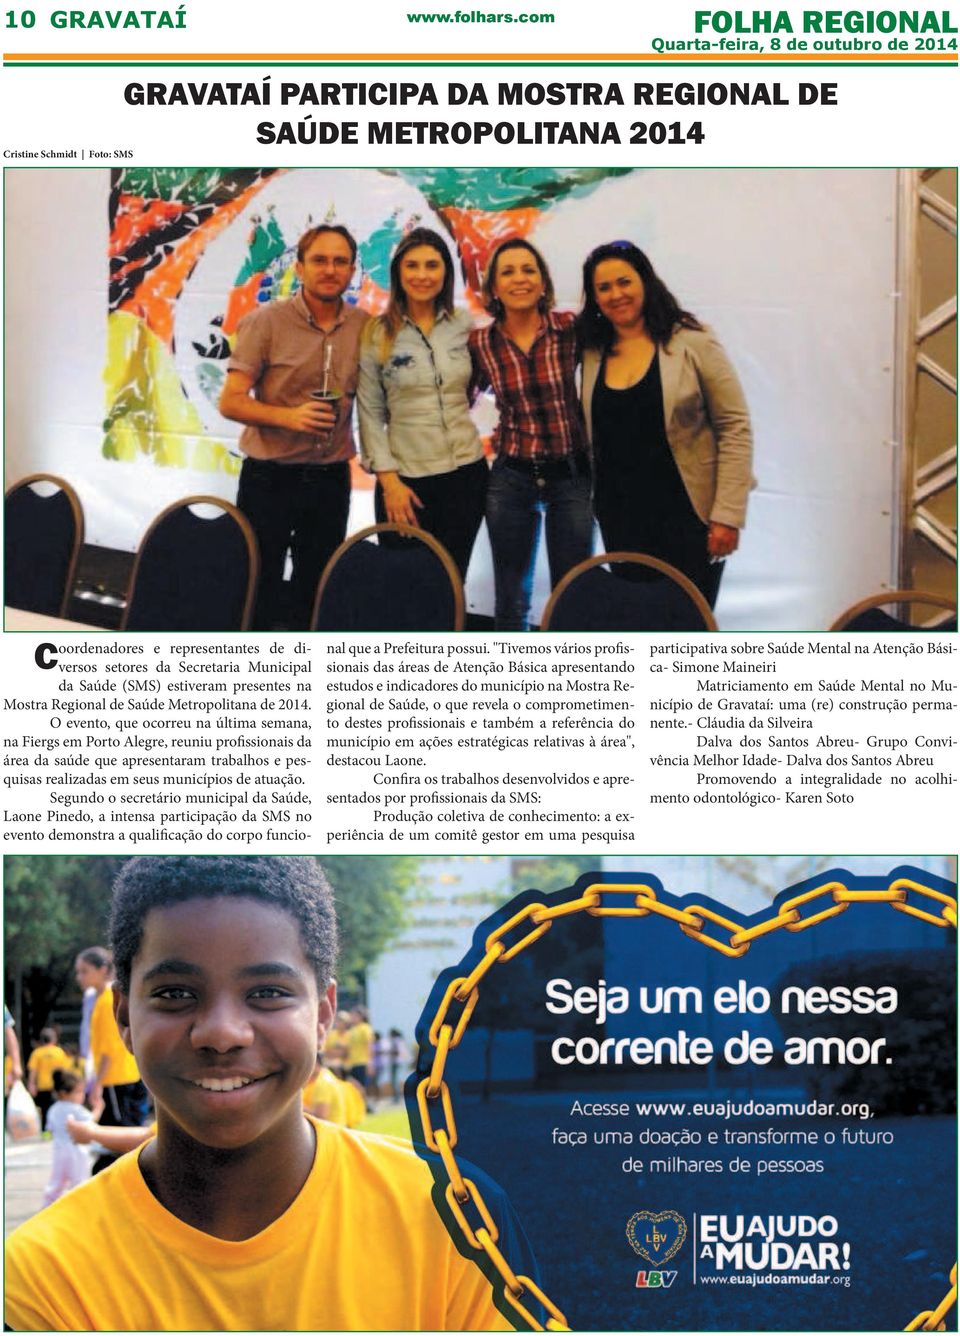 O evento, que ocorreu na última semana, na Fiergs em Porto Alegre, reuniu profissionais da área da saúde que apresentaram trabalhos e pesquisas realizadas em seus municípios de atuação.